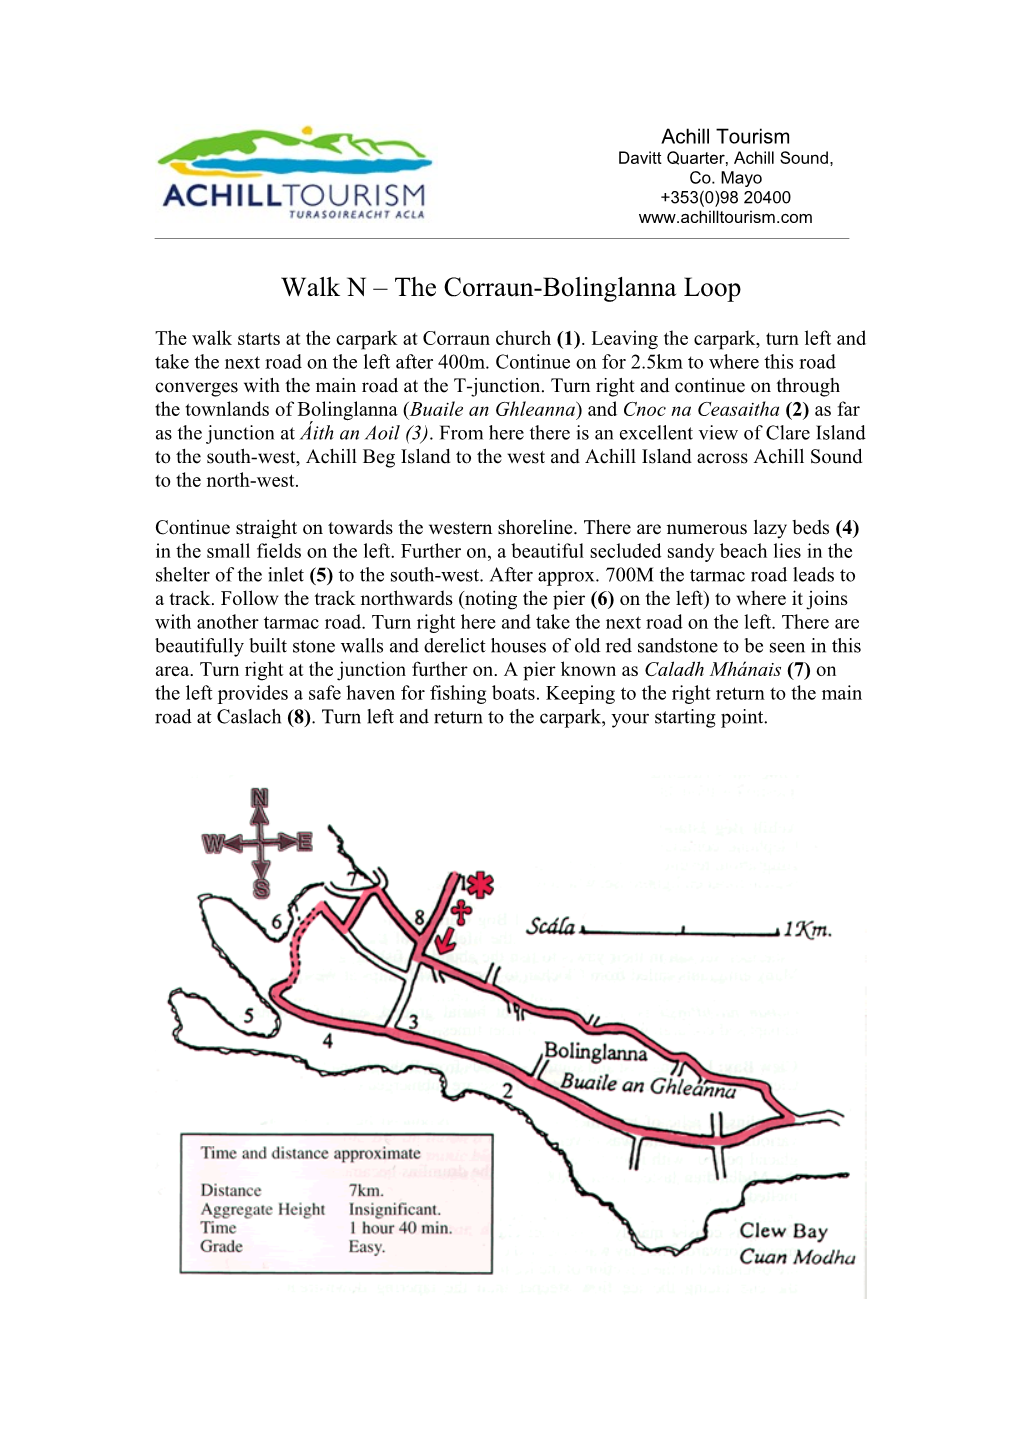 Walk N – the Corraun-Bolinglanna Loop